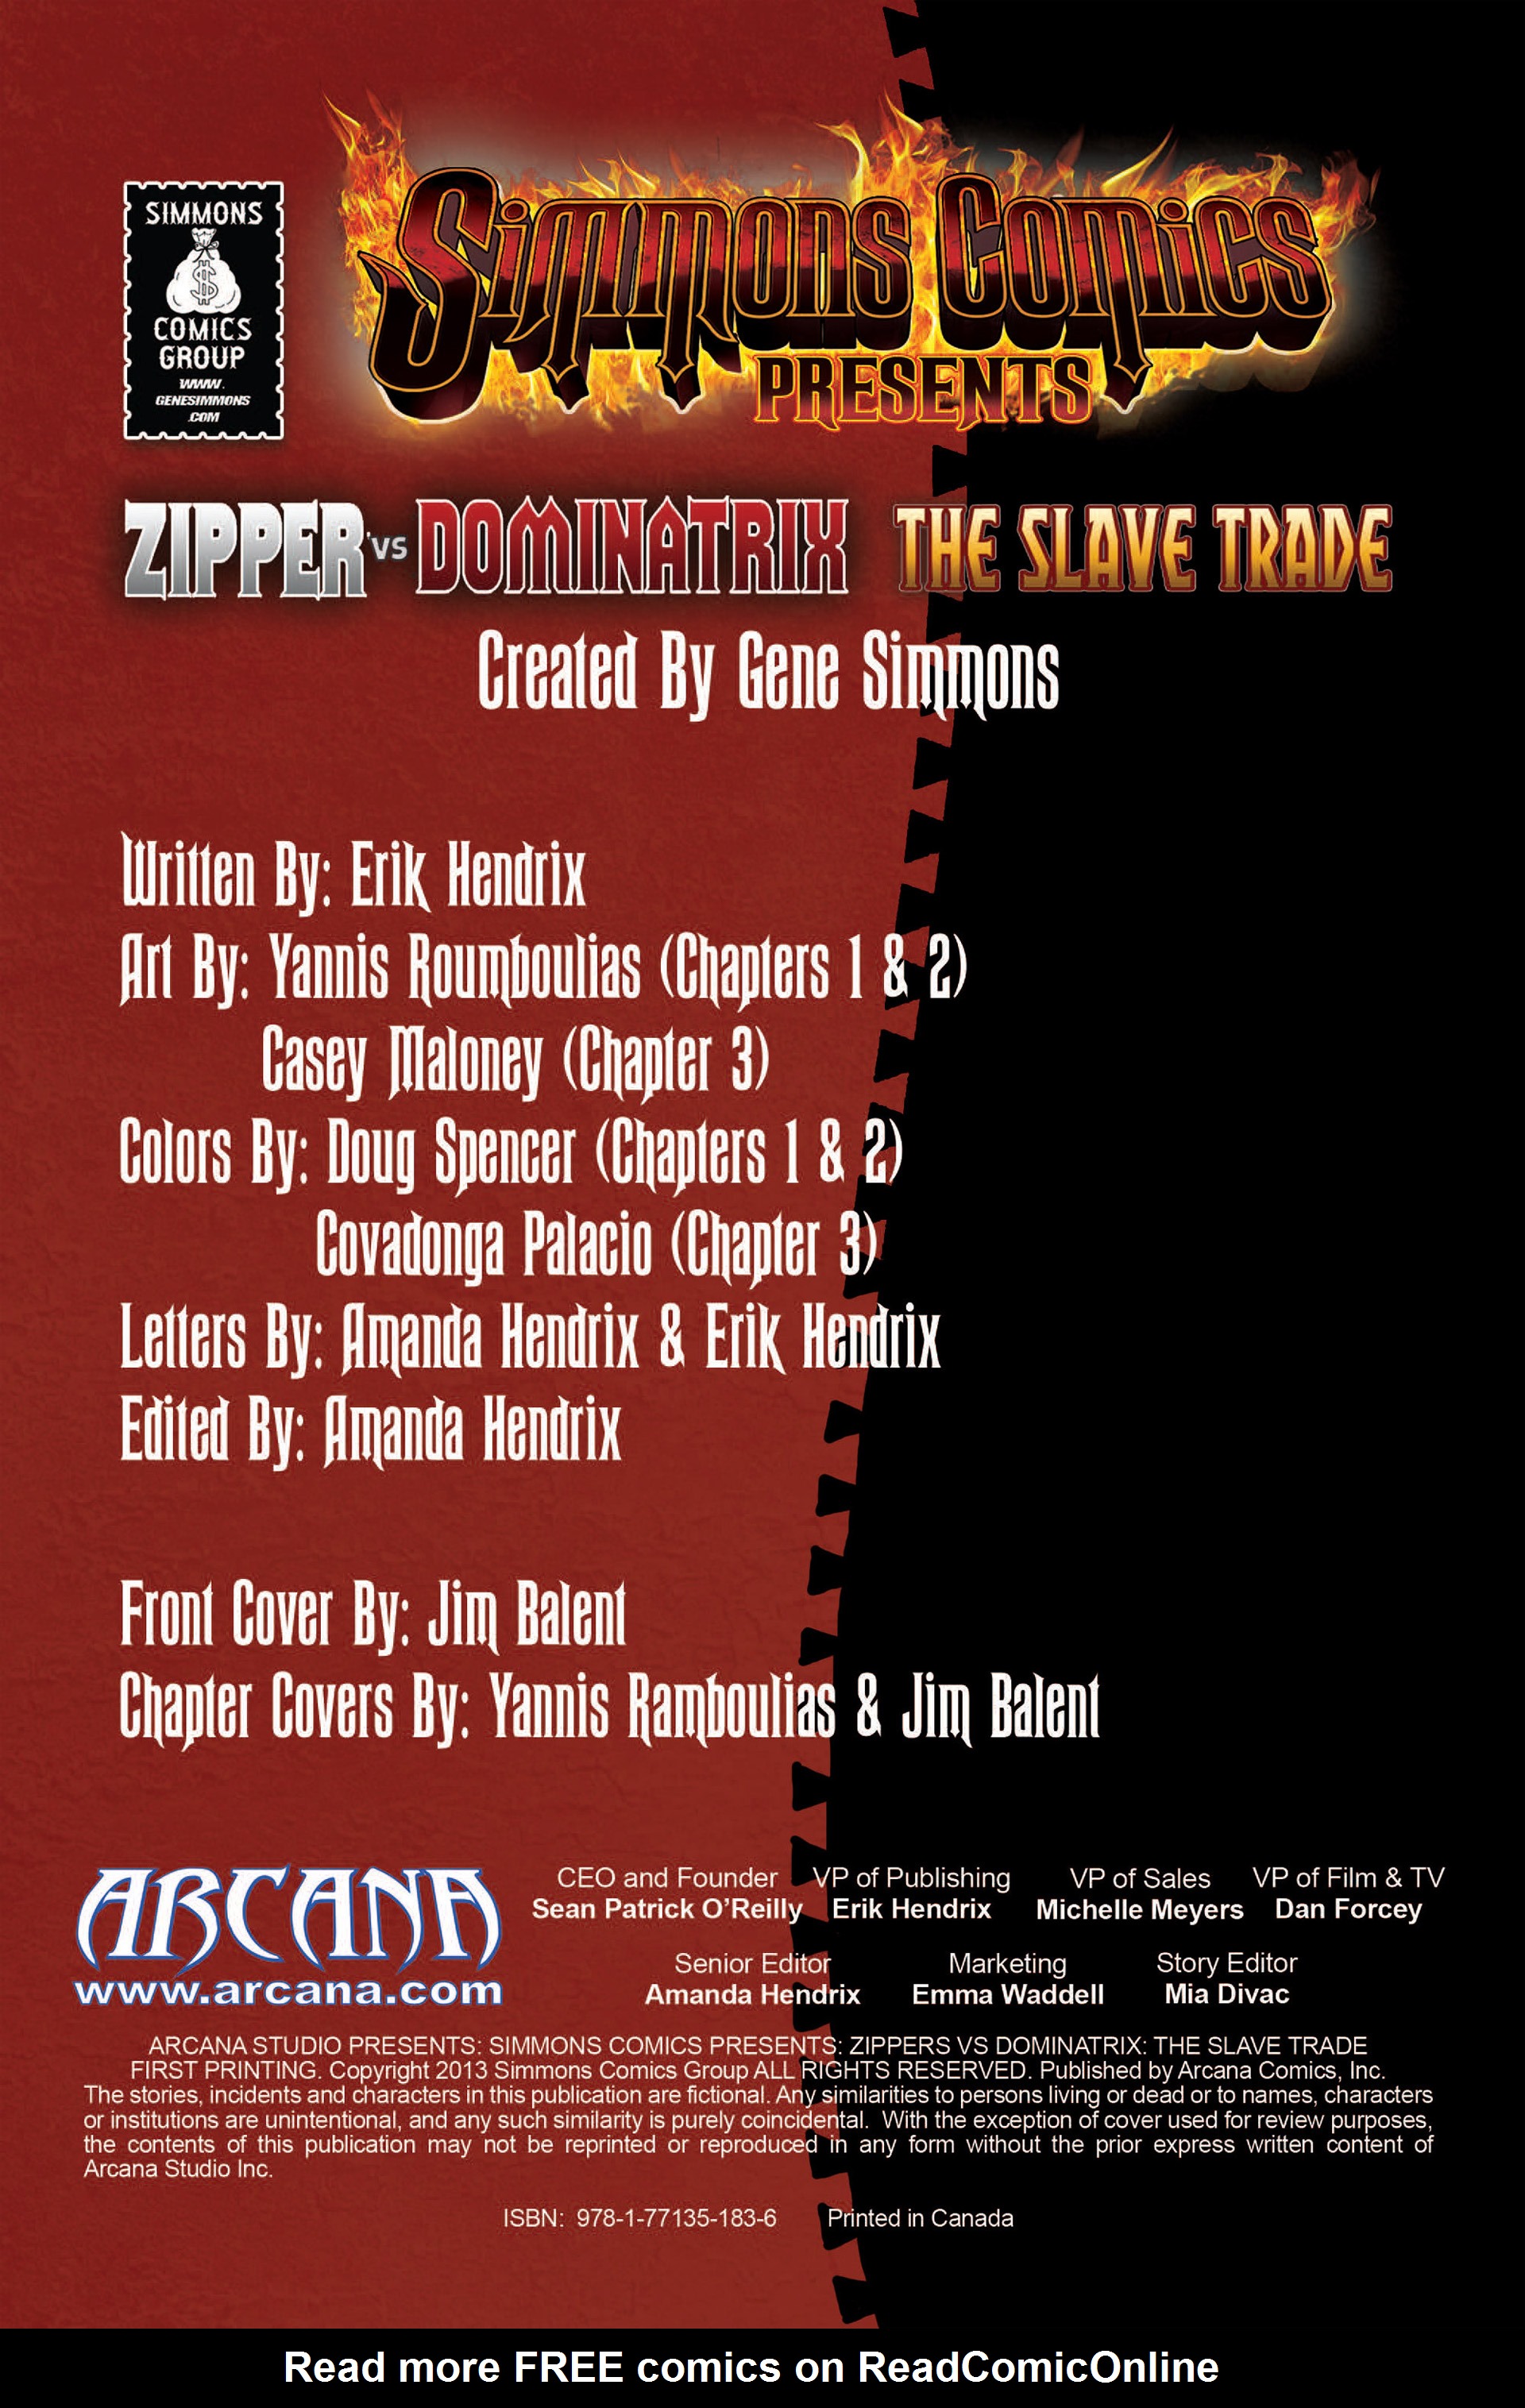 Read online Simmons Comics Presents Zipper vs Dominatrix comic -  Issue # TPB - 2